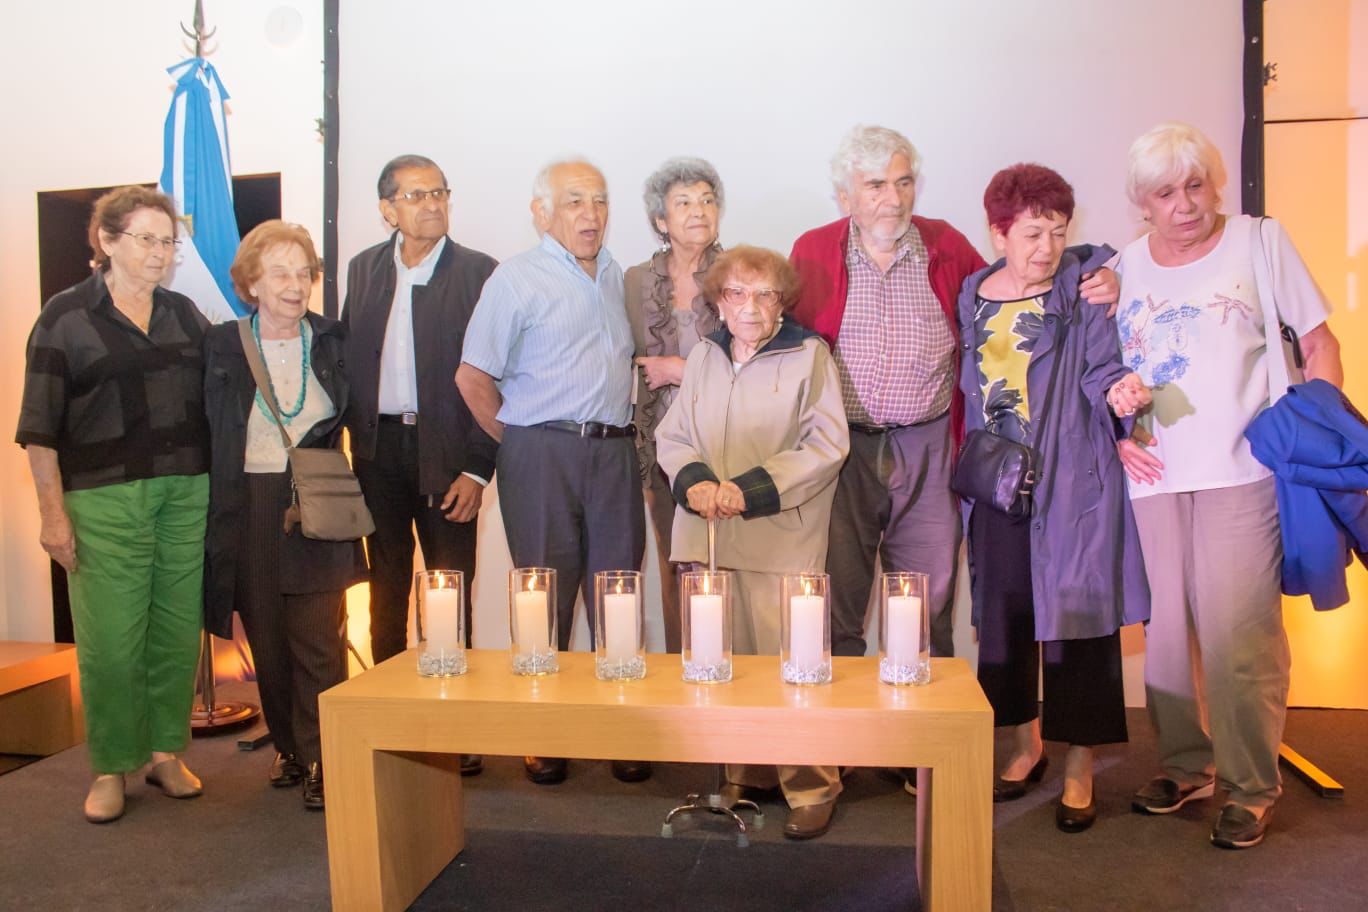 Los sobrevivientes del Holocausto encendieron seis velas blancas en memoria de las personas asesinadas.